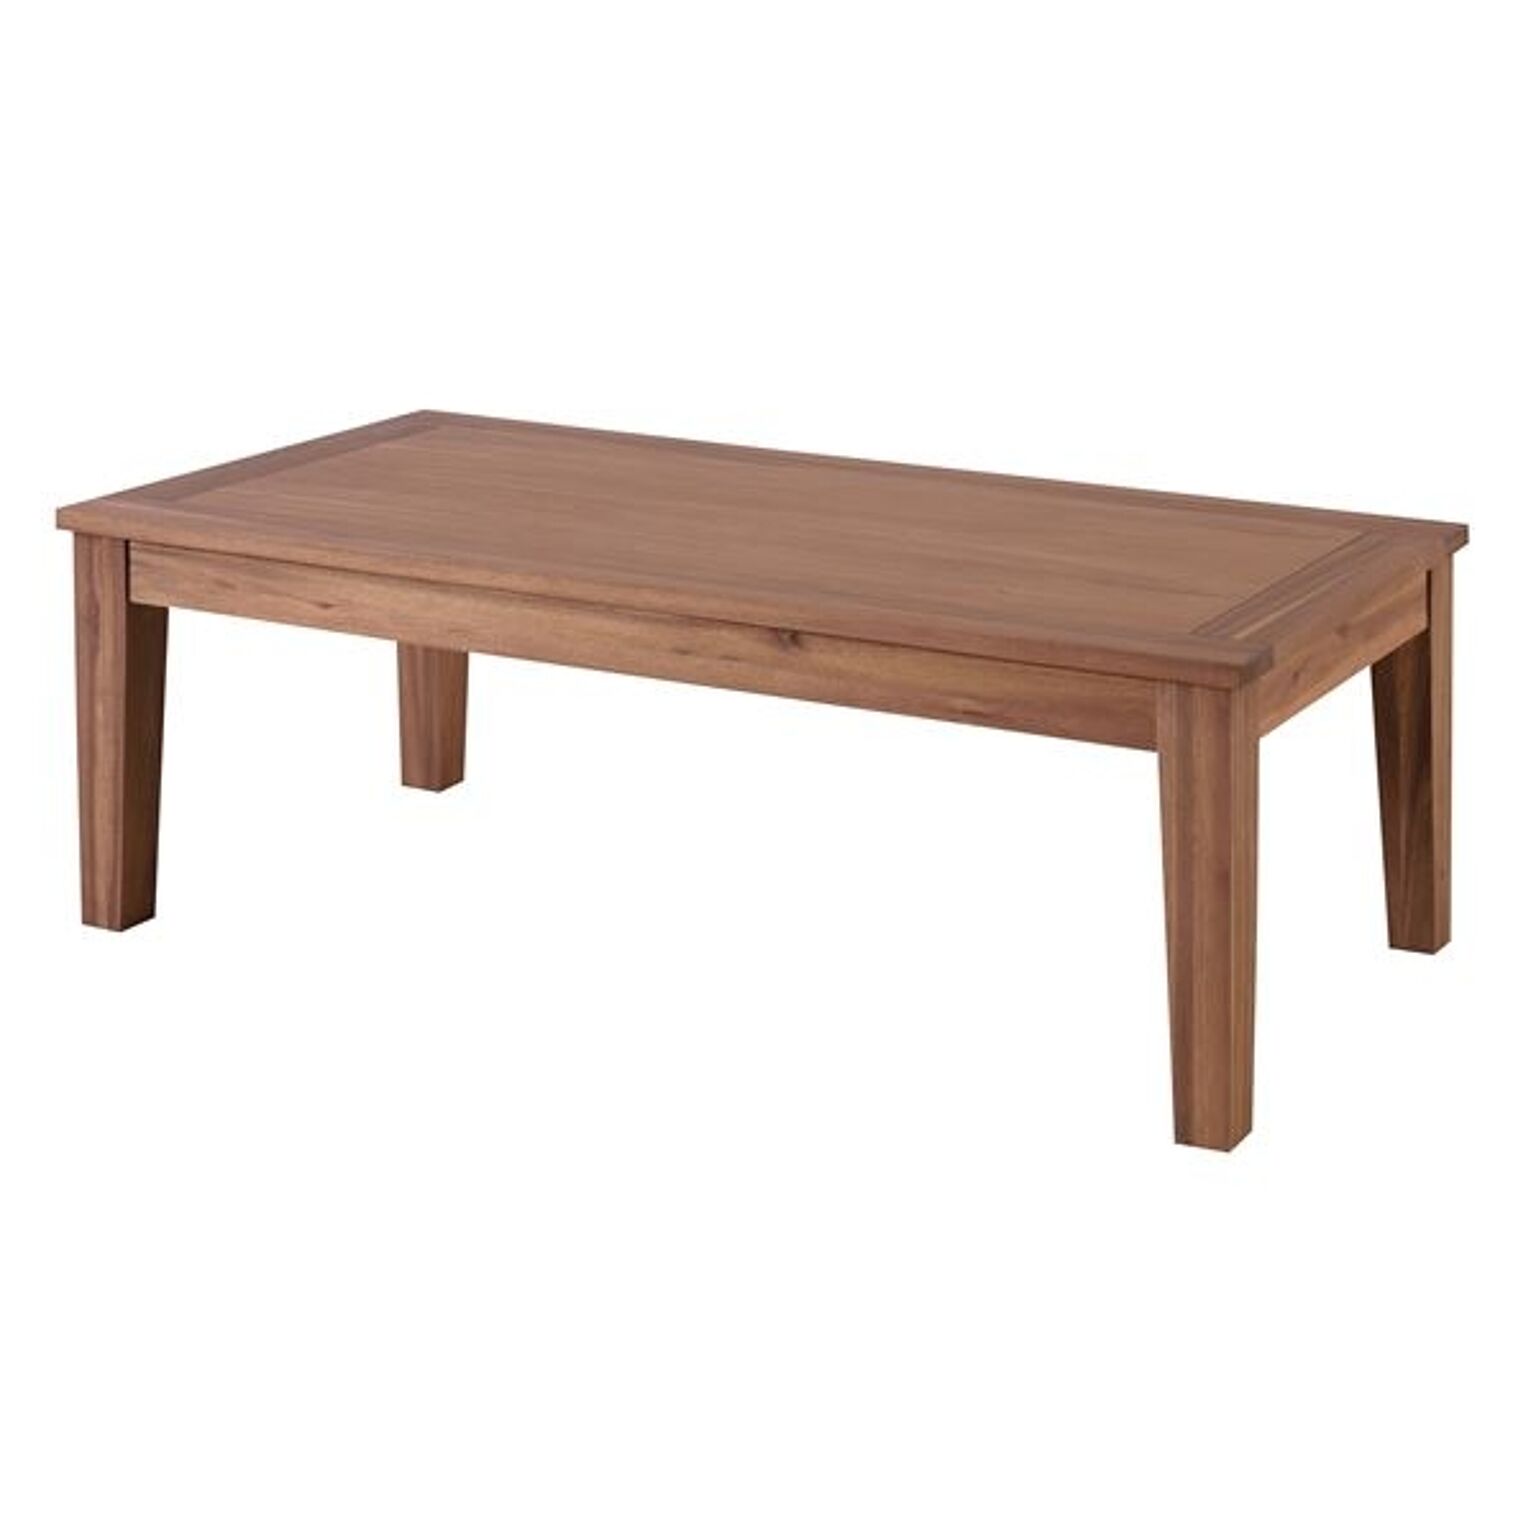 木製センターテーブル/ローテーブル 【Lサイズ 幅110cm×奥行55cm】 アカシア材オイル仕上げ 『アルンダ』